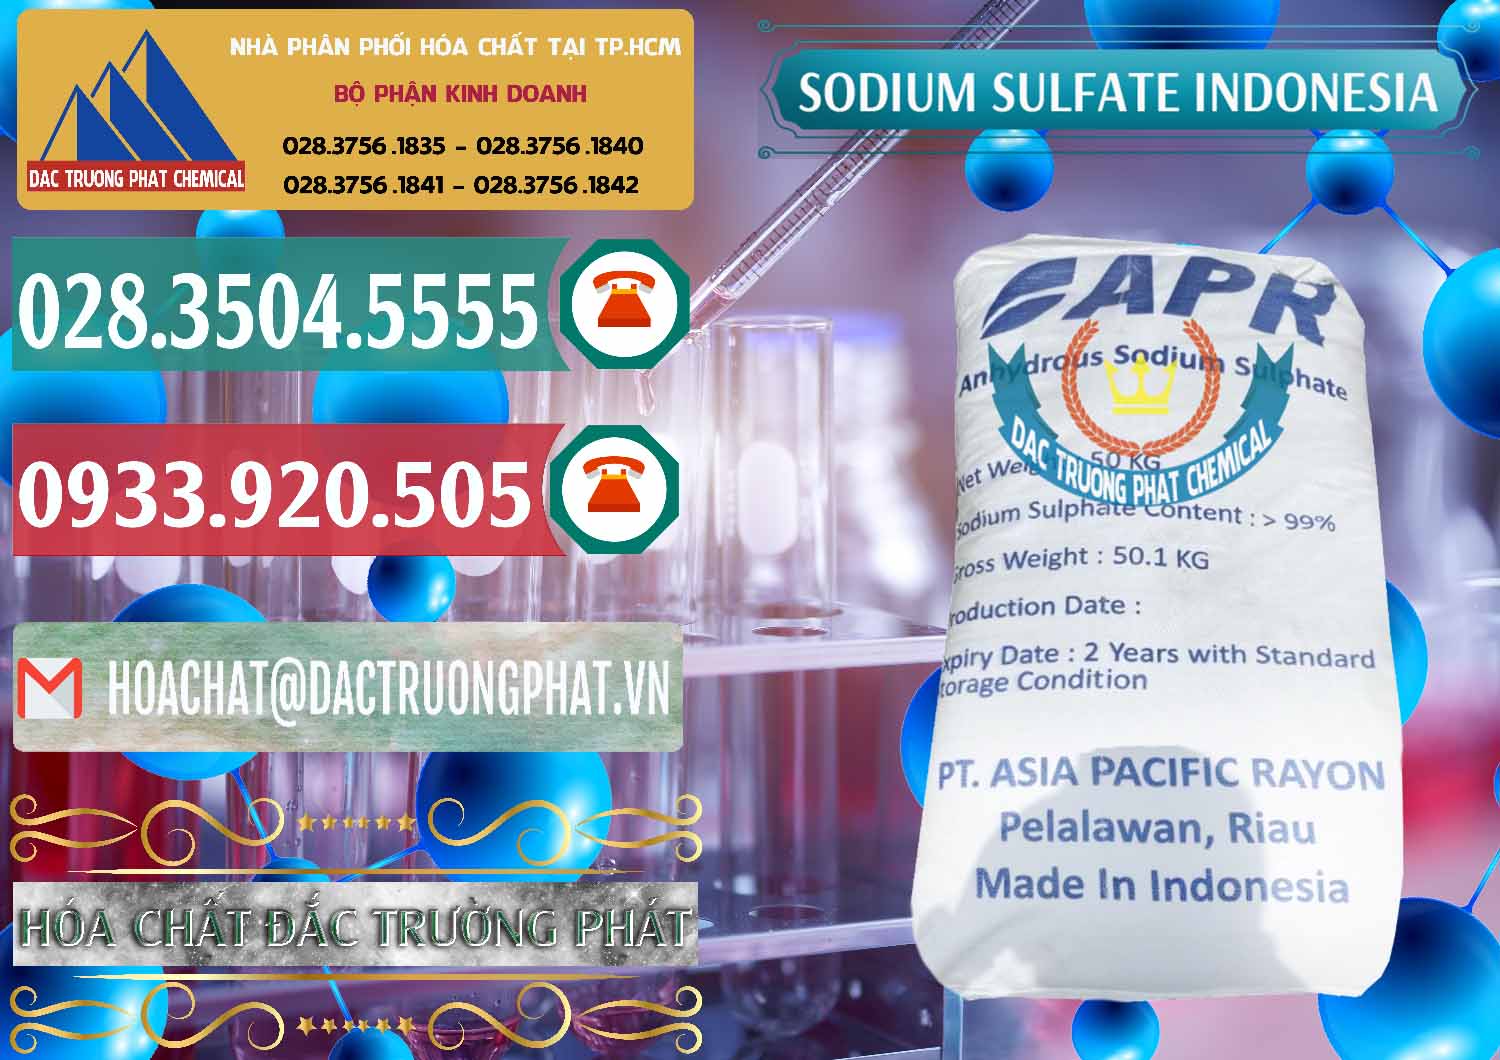 Cty chuyên bán ( cung cấp ) Sodium Sulphate - Muối Sunfat Na2SO4 APR Indonesia - 0460 - Đơn vị cung cấp - bán hóa chất tại TP.HCM - muabanhoachat.vn